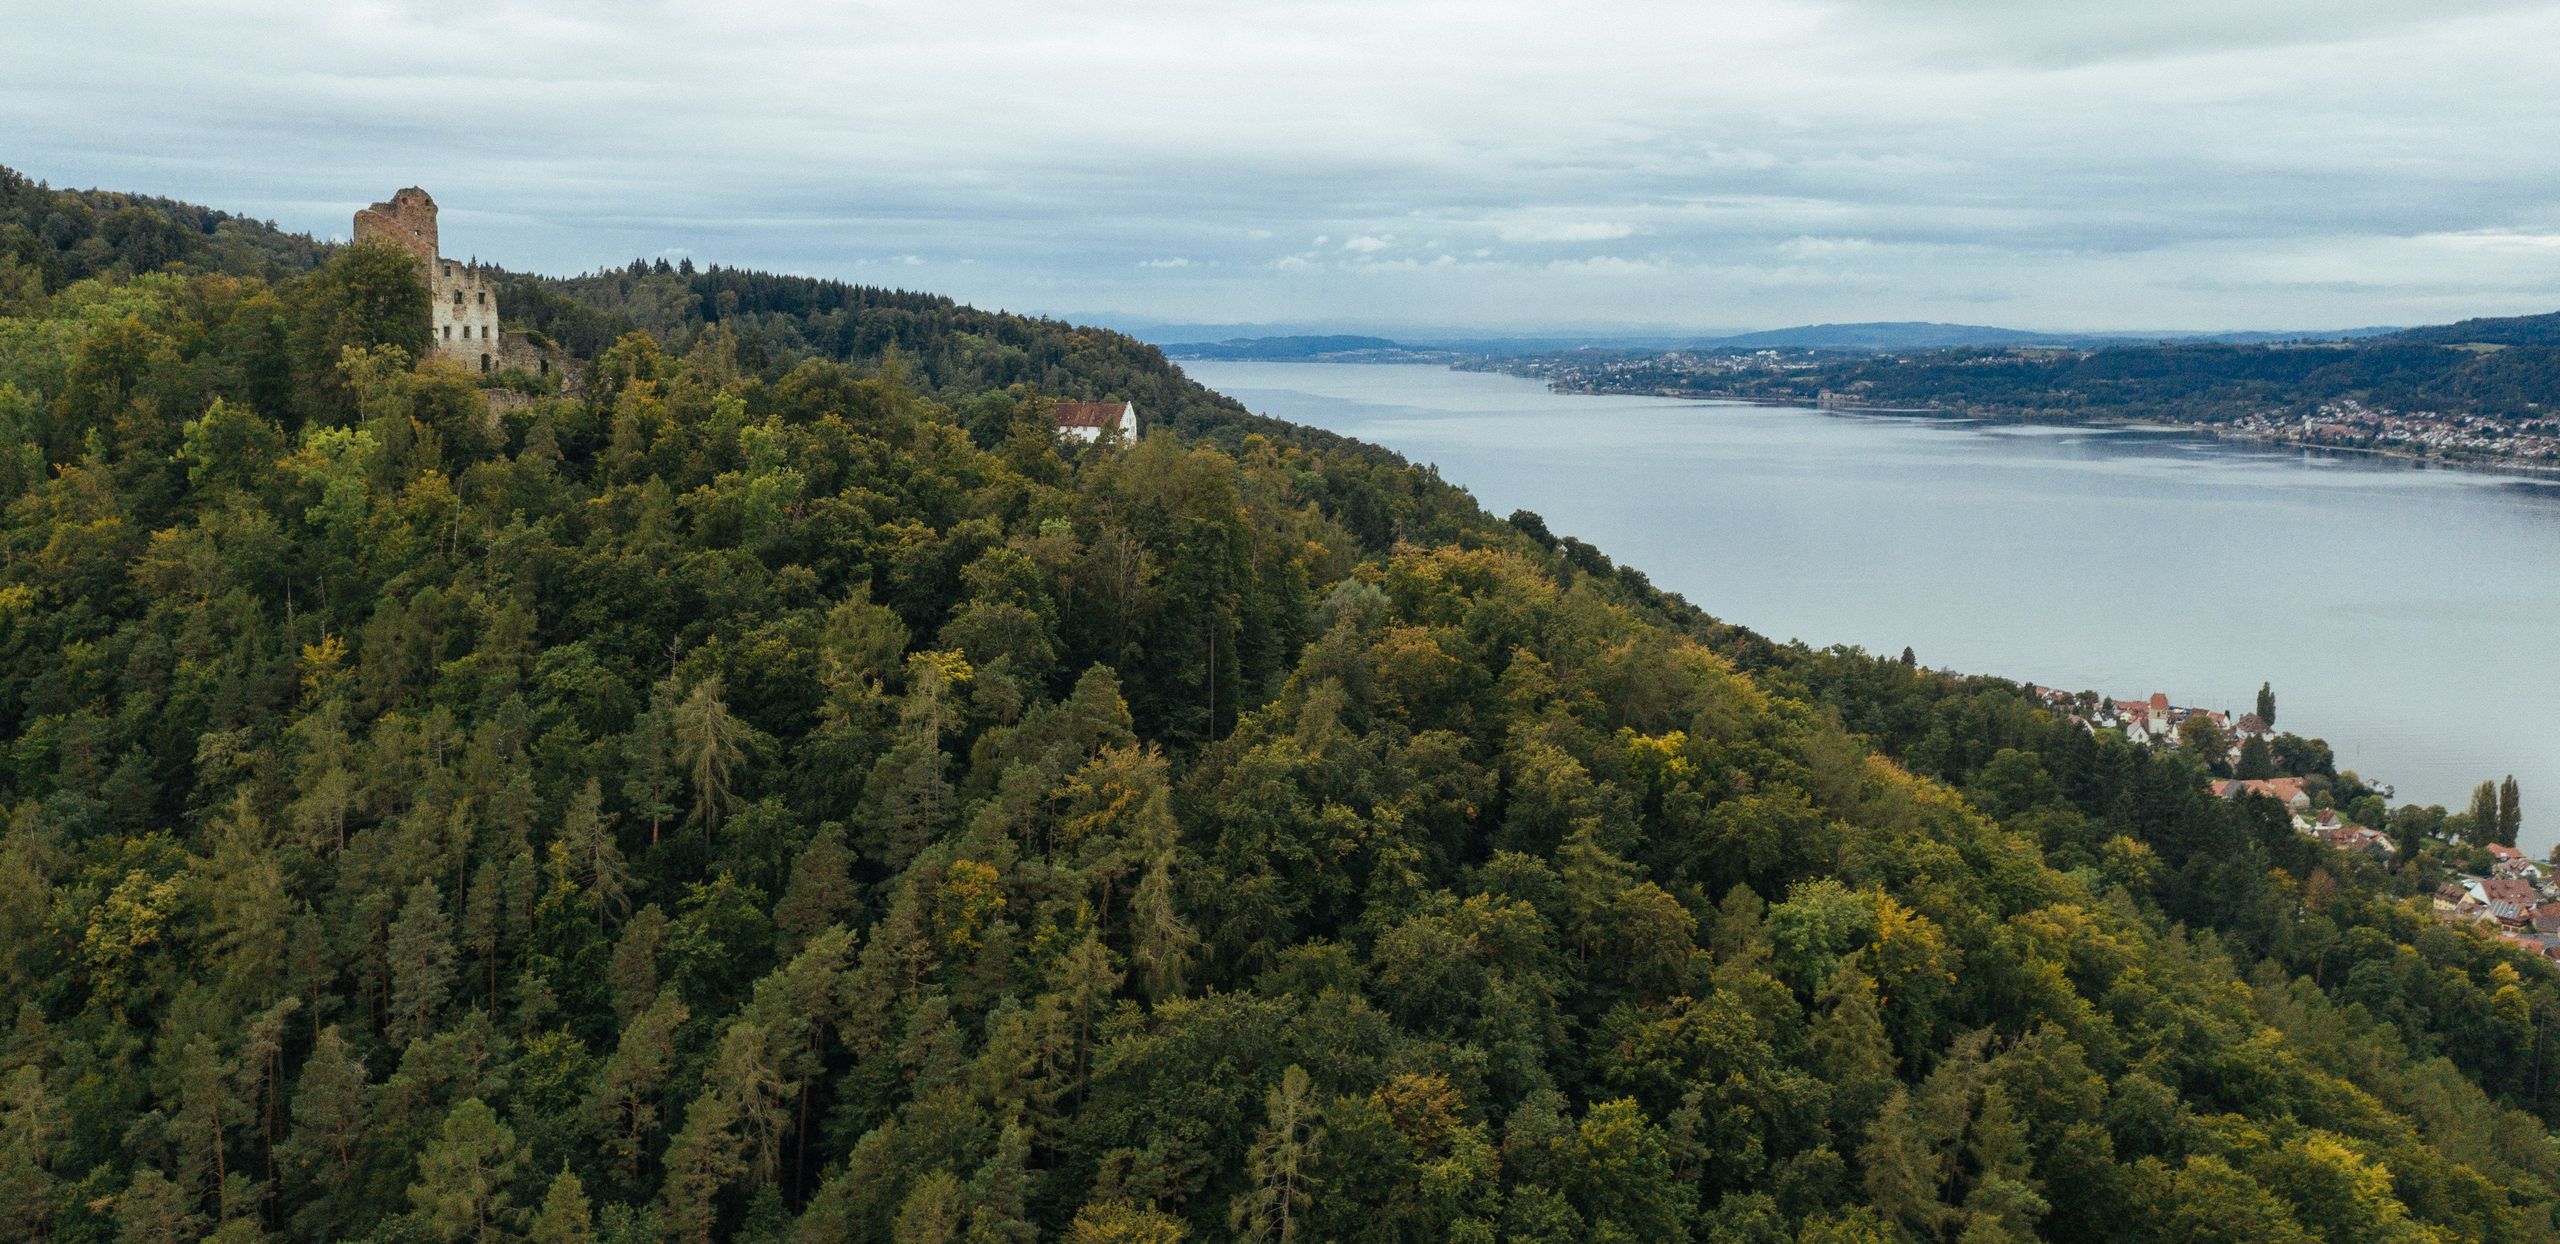 Blick von einem Geheimtipp Stellplatz auf einem bewaldeten Berg auf den Bodensee 